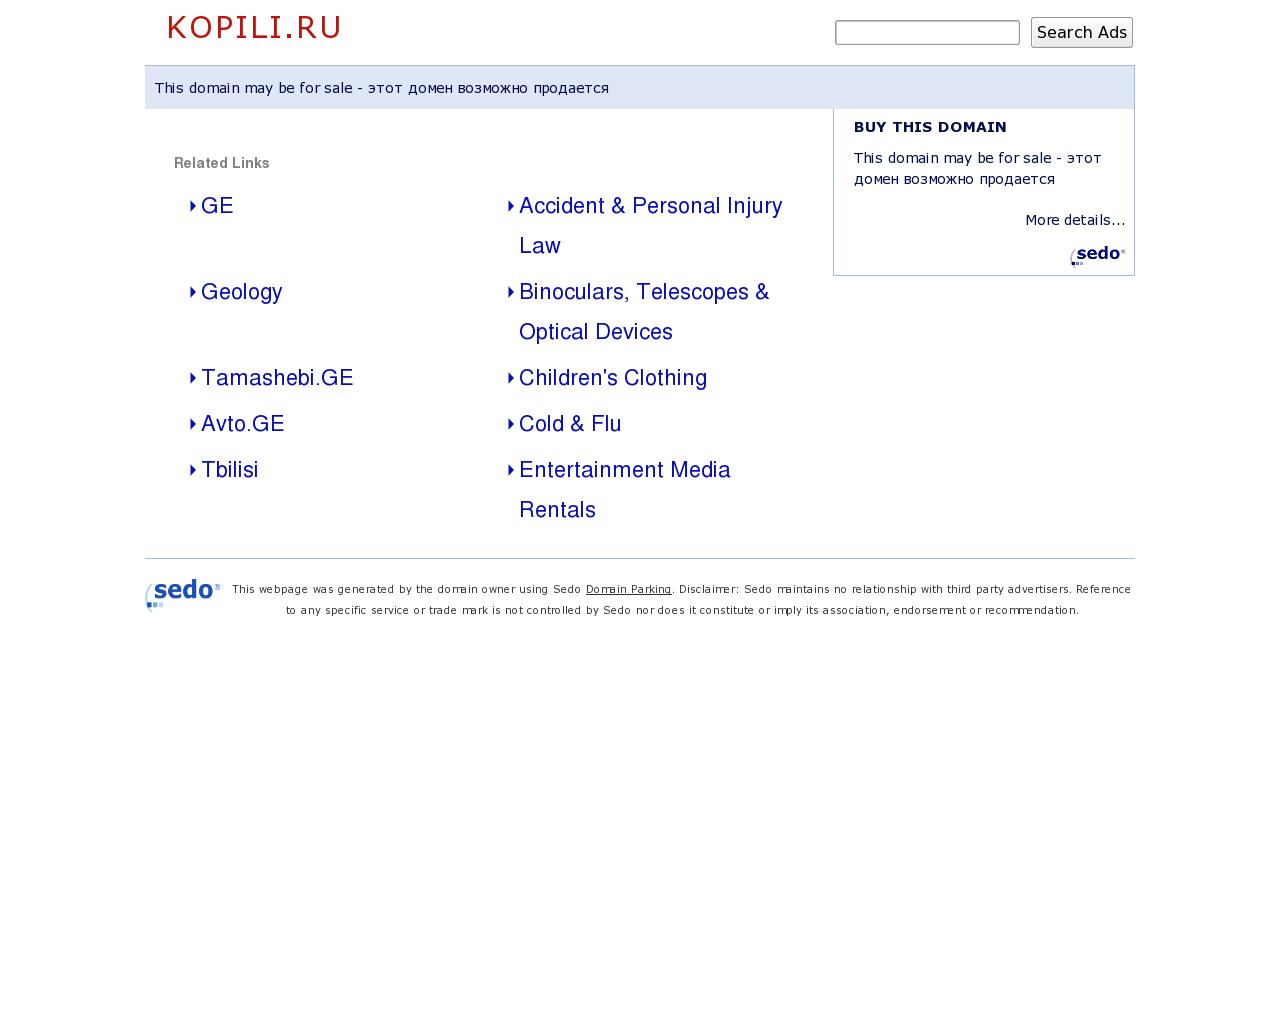 Изображение сайта kopili.ru в разрешении 1280x1024